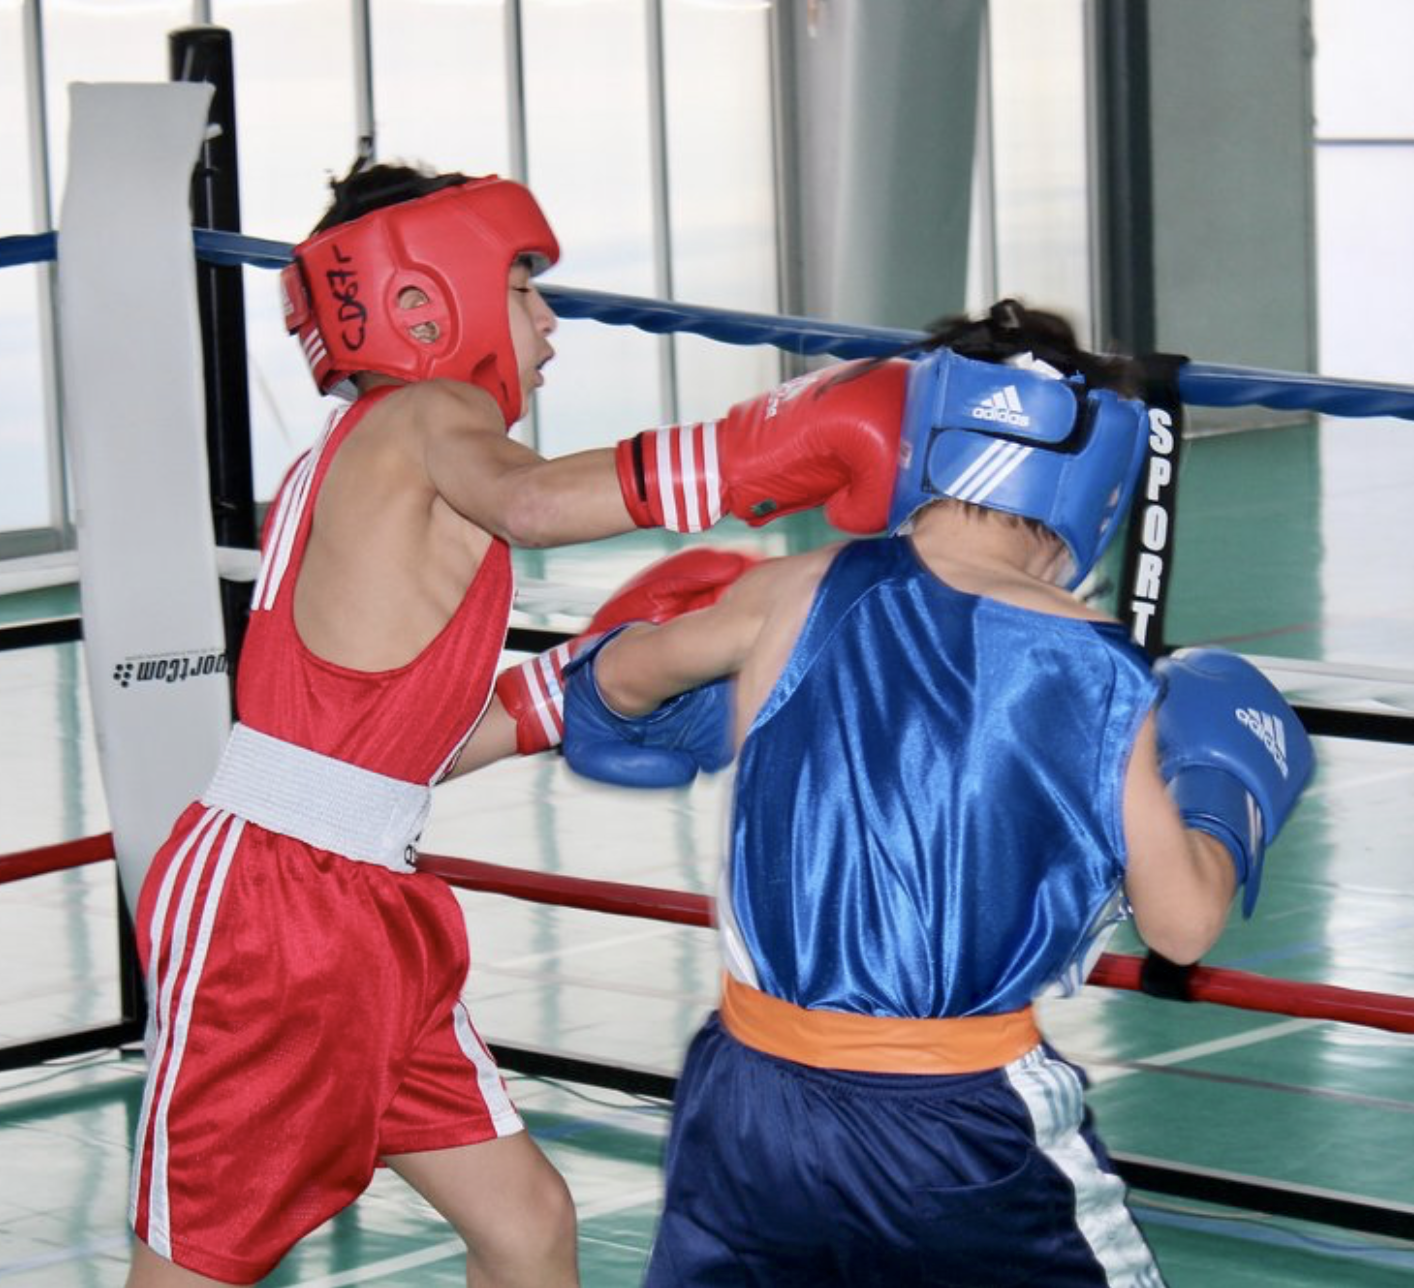 La boxe, un sport éducatif ? Reportage dans un cours de boxe pour